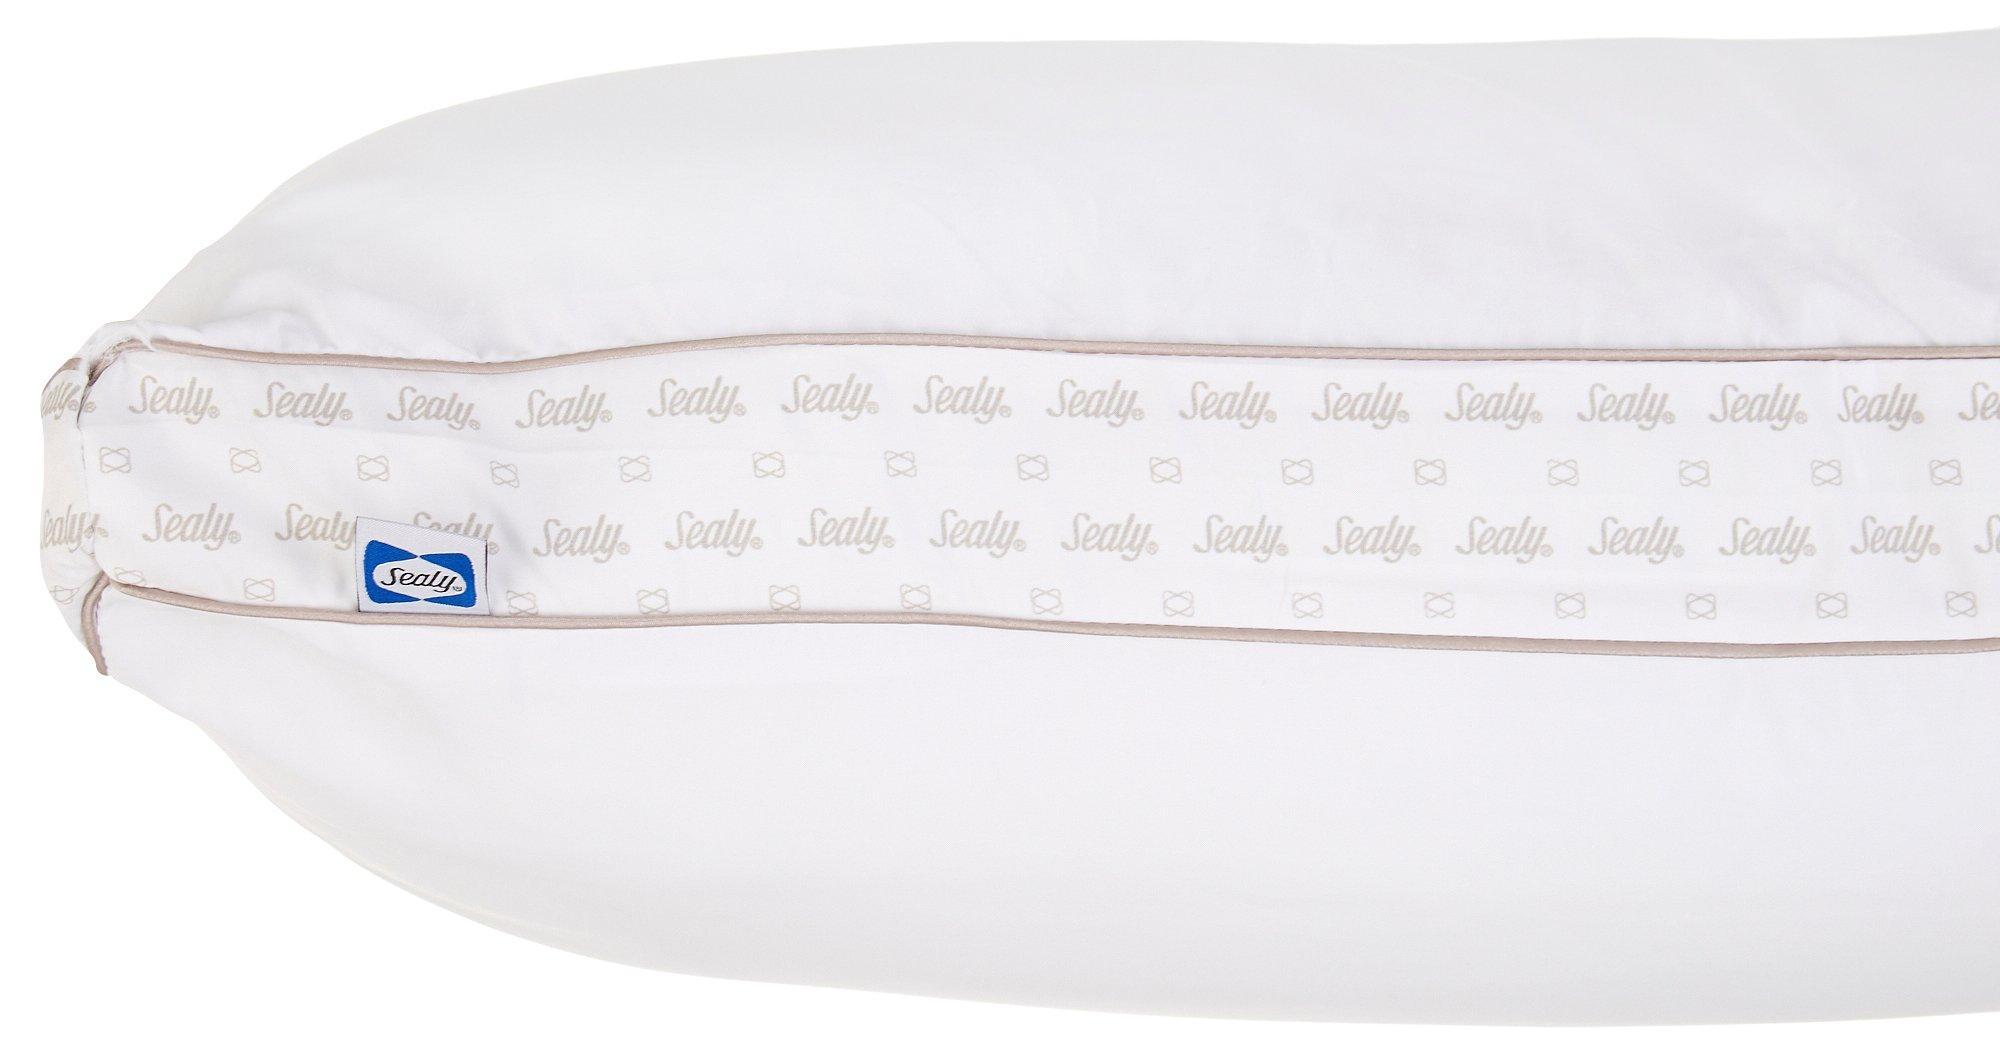 Sealy Super Firm Standard Pillow